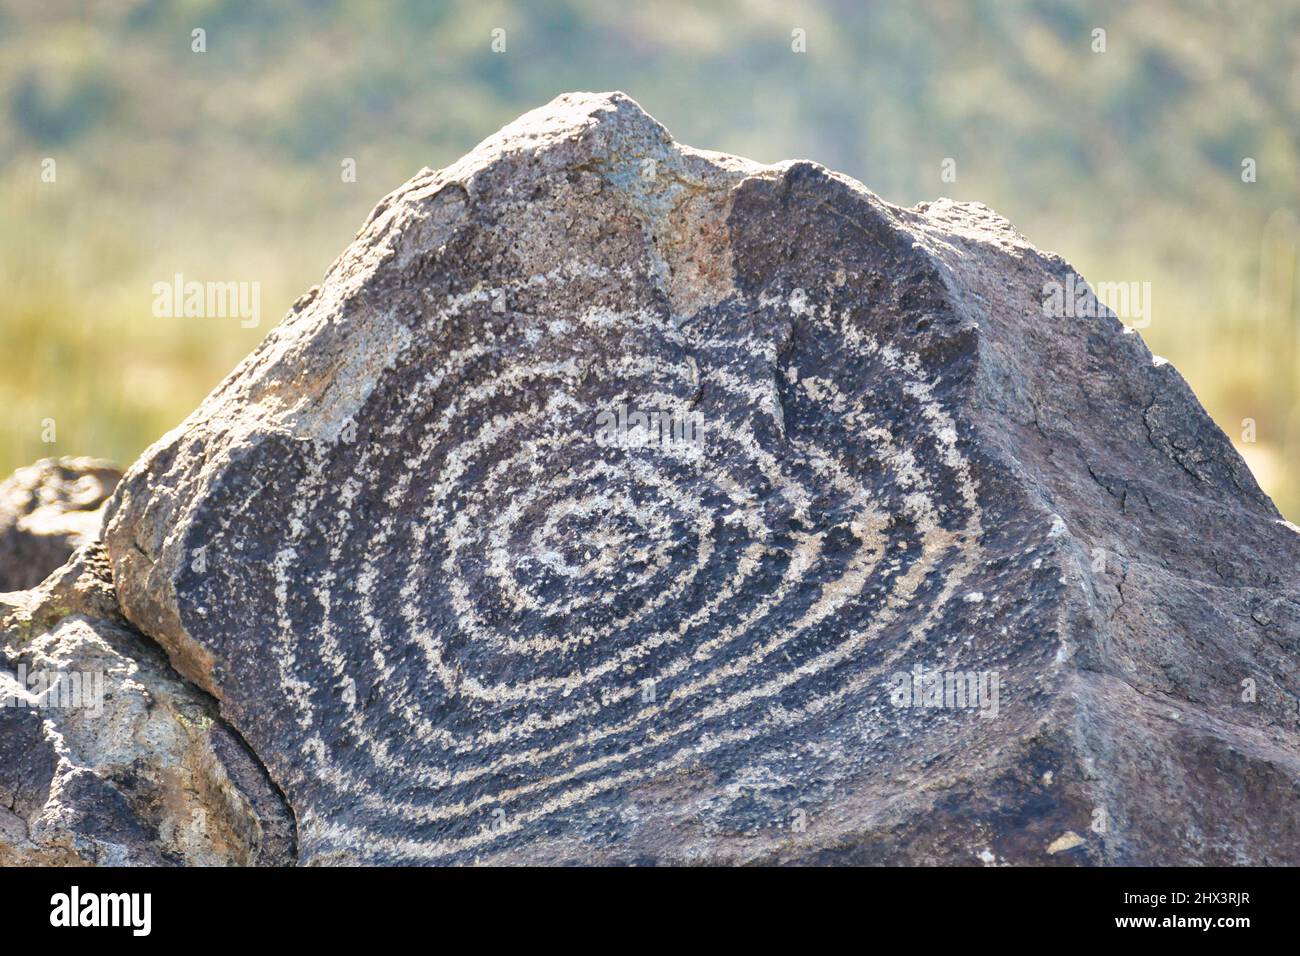 Pétroglyphes Hohokam de conception abstraite en spirale au site de signal Hill Petroglyph dans le parc national de Saguaro (ouest) près de Tucson, Arizona, États-Unis Banque D'Images